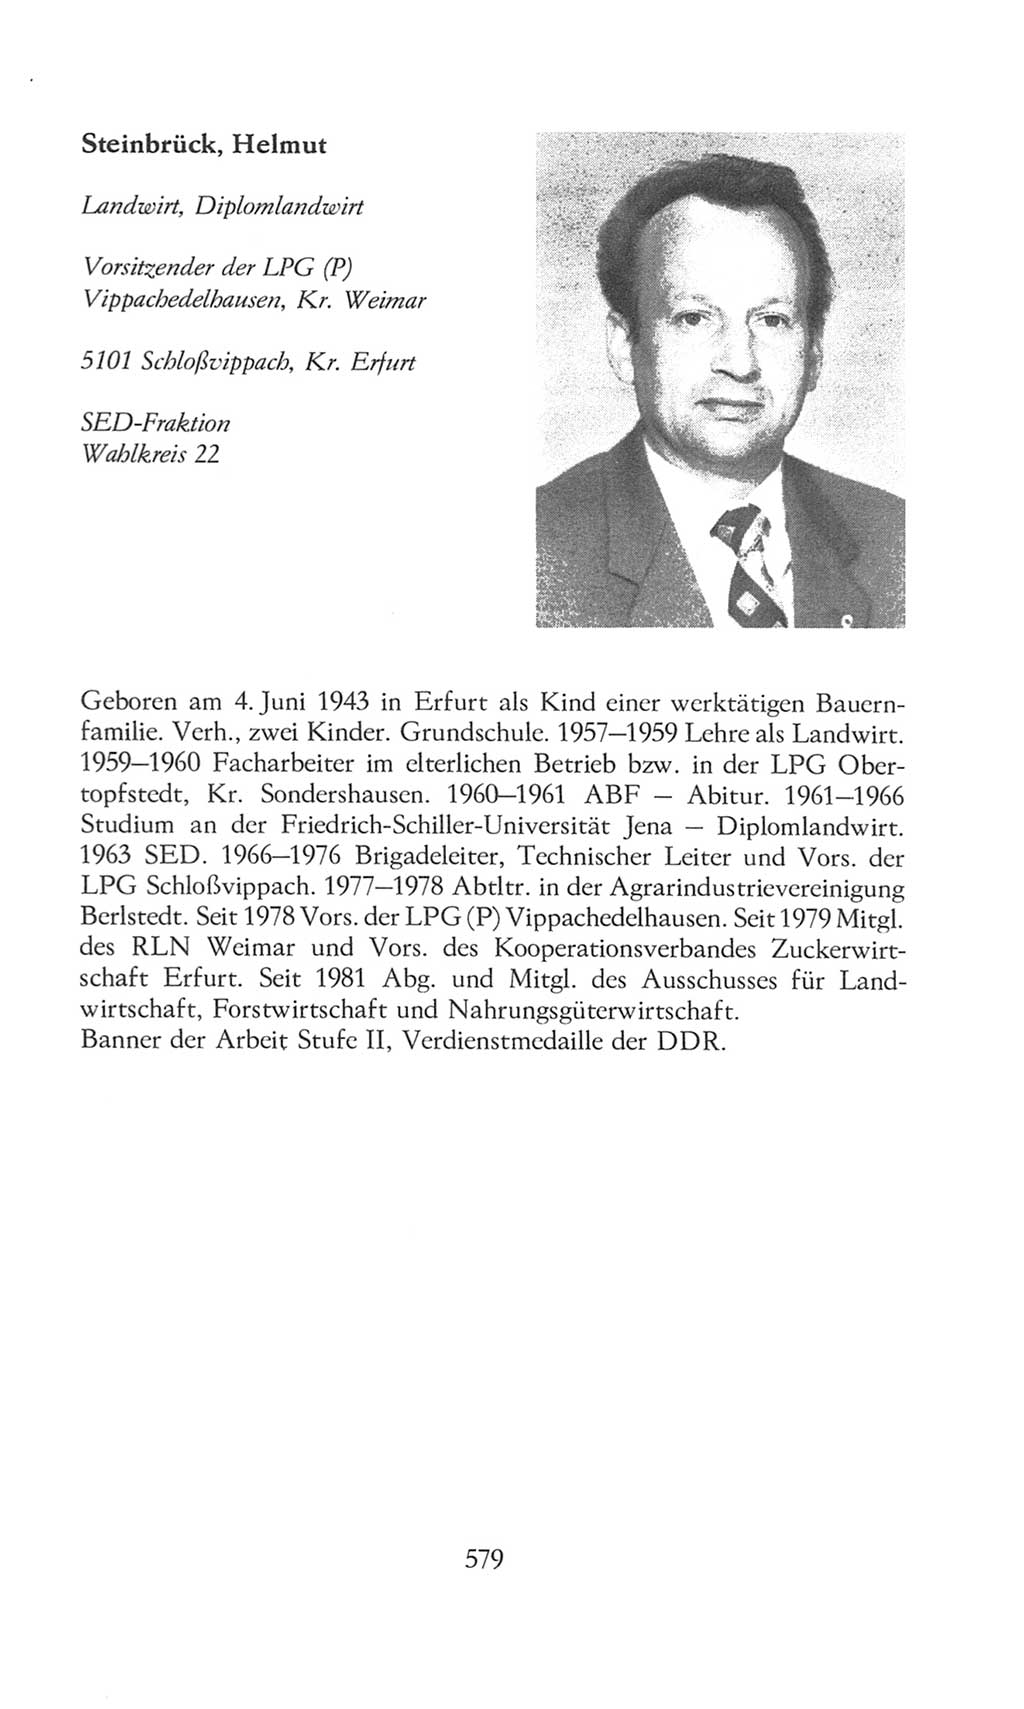 Volkskammer (VK) der Deutschen Demokratischen Republik (DDR), 8. Wahlperiode 1981-1986, Seite 579 (VK. DDR 8. WP. 1981-1986, S. 579)